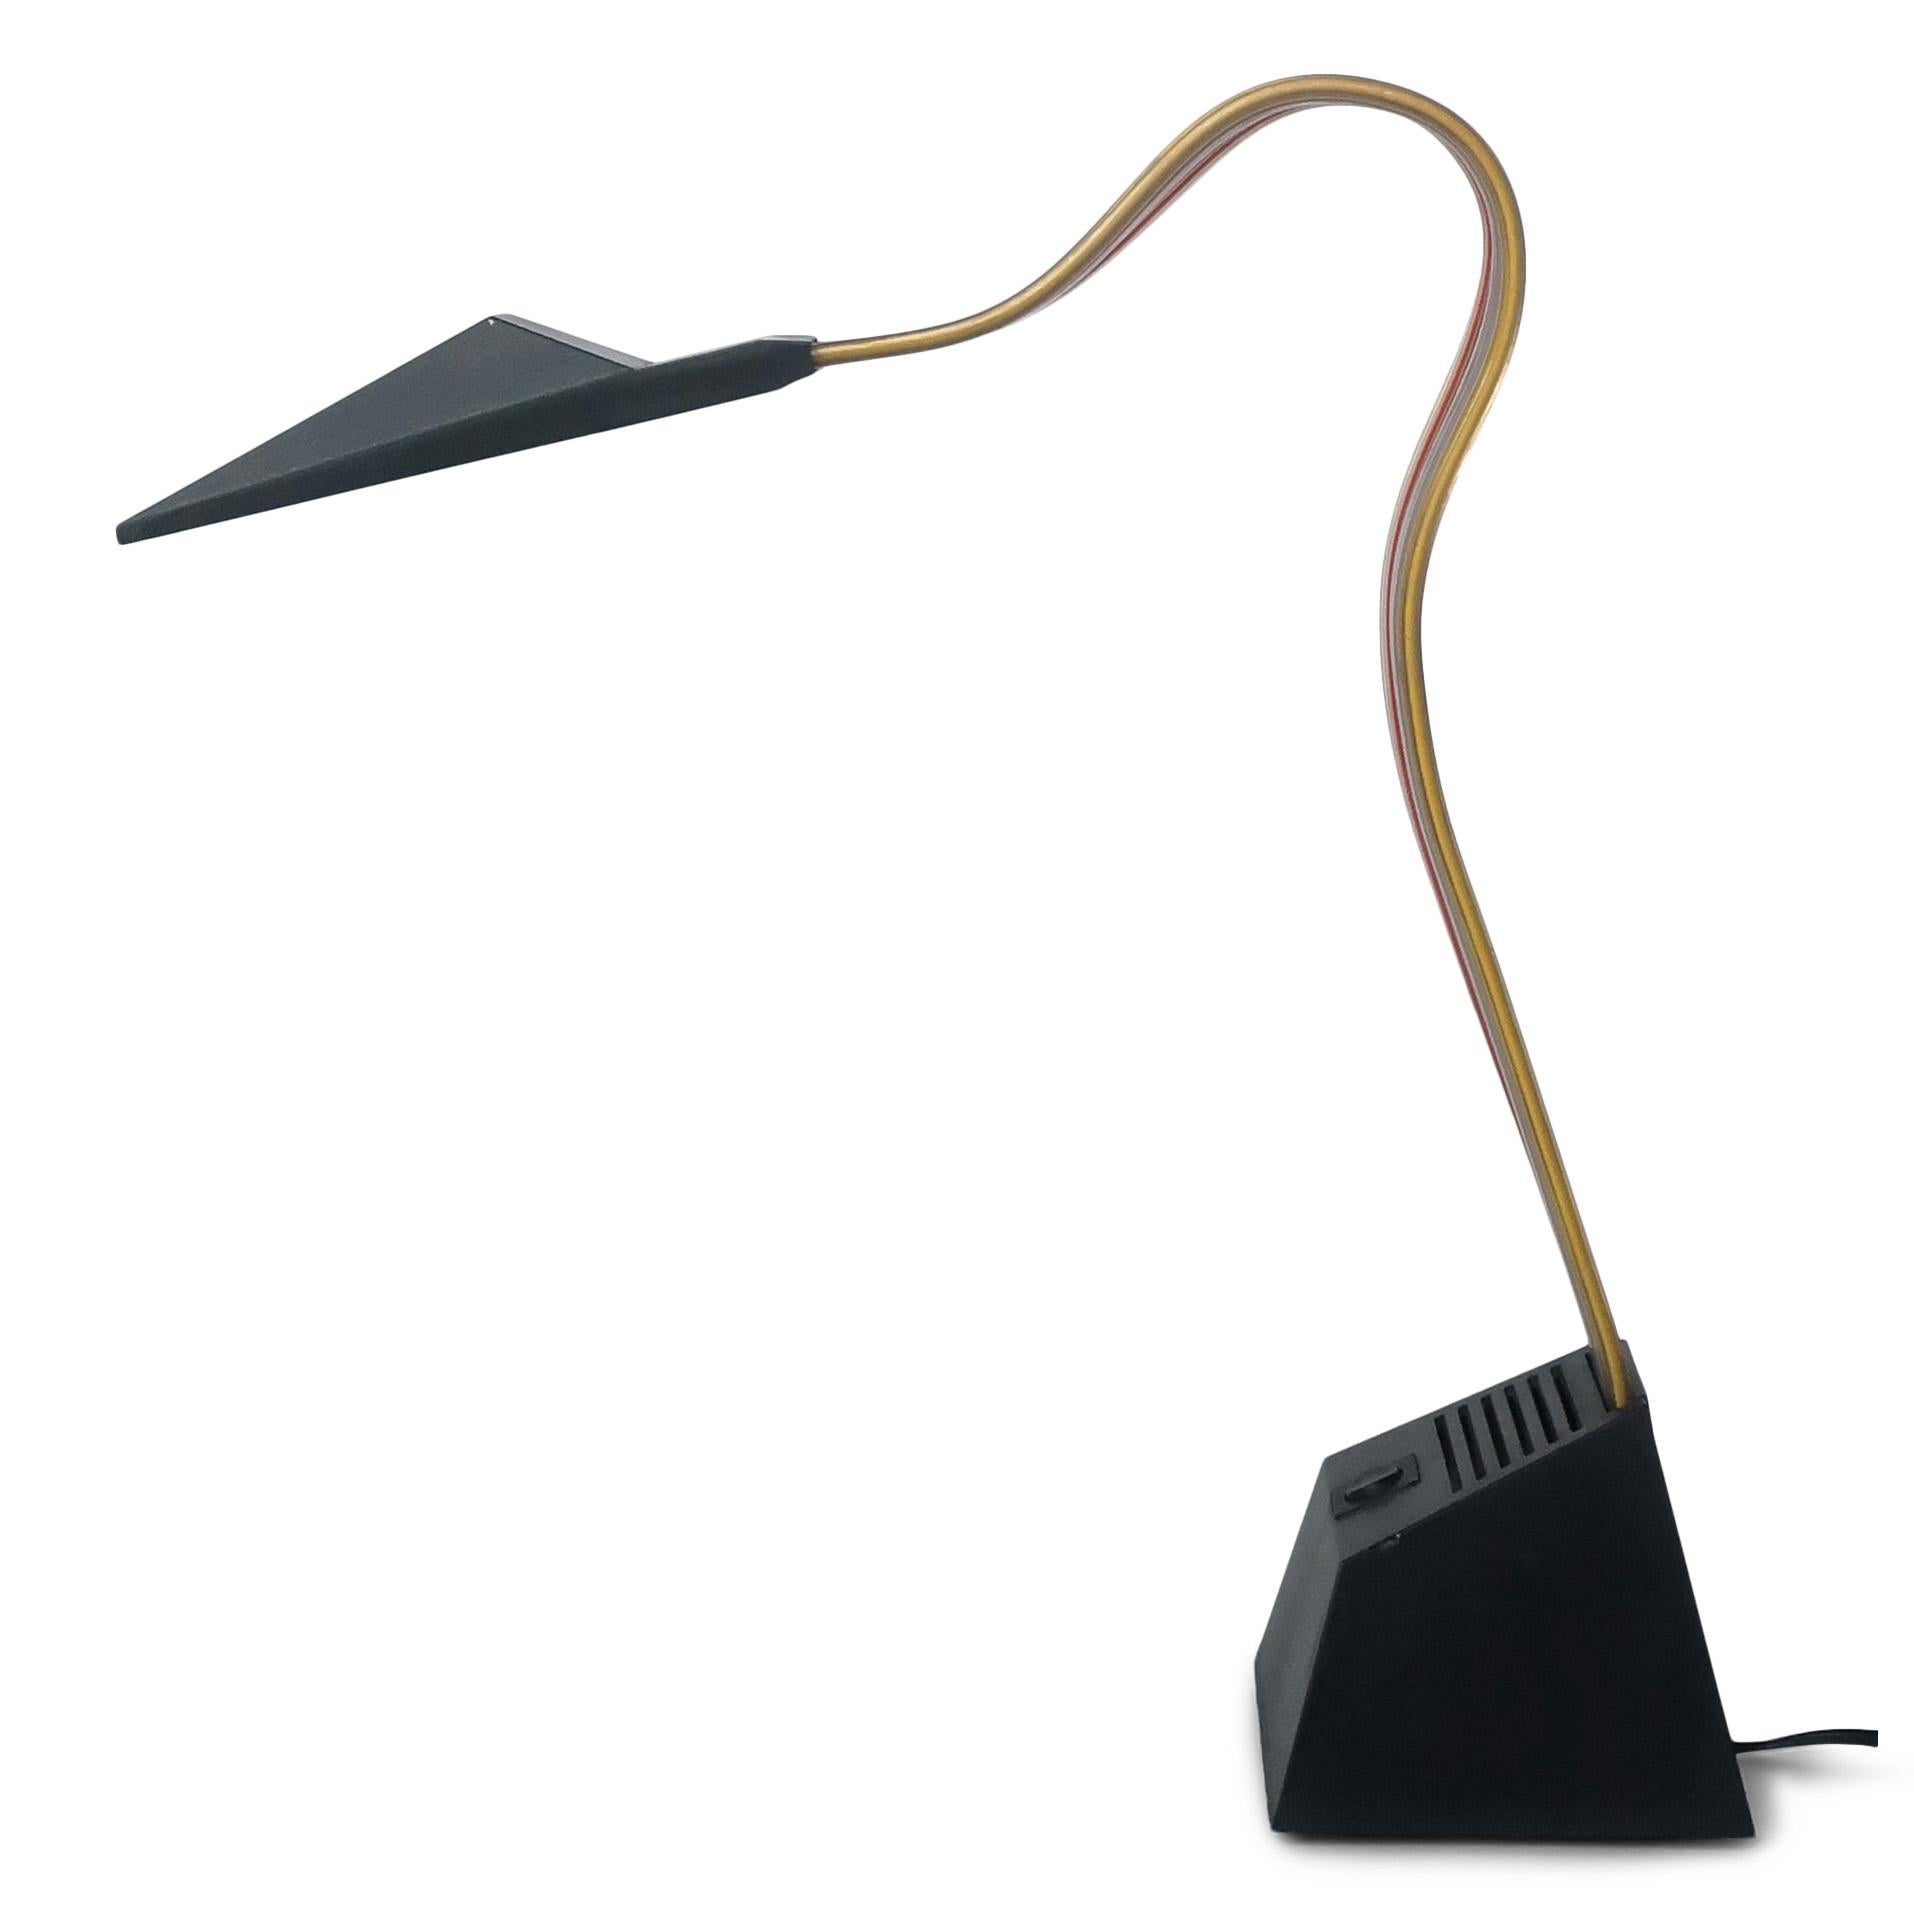 Lampe de table postmoderne par excellence, la Nastro a été conçue par Alberto Fraser pour Stilnovo en 1983.  Fabriquée en Italie, elle est composée d'une base lestée en plastique noir, d'un abat-jour en plastique noir et d'une tige en PVC flexible